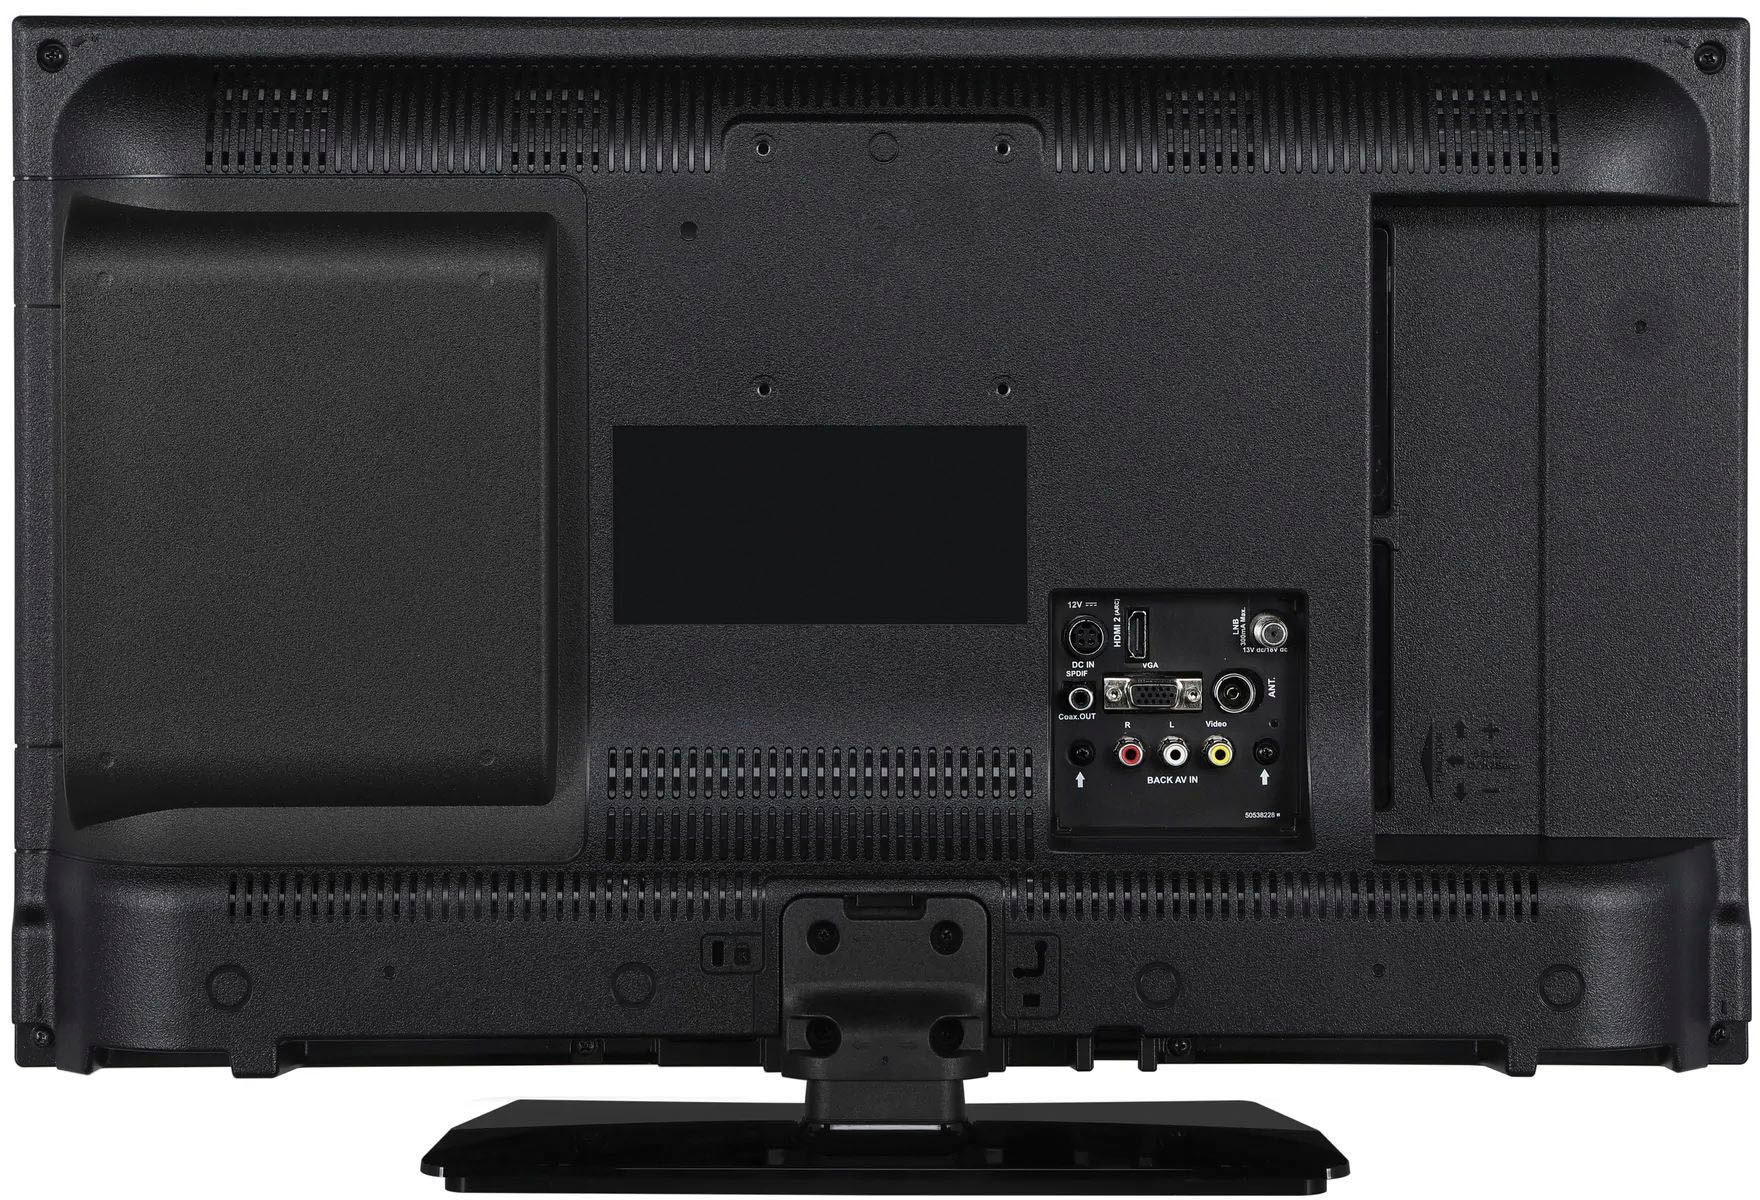 Lenco LCD-LED Fernseher »DVL-2483BK - Smart-TV mit DVD«, 61 cm/24 Zoll, HD, Smart-TV